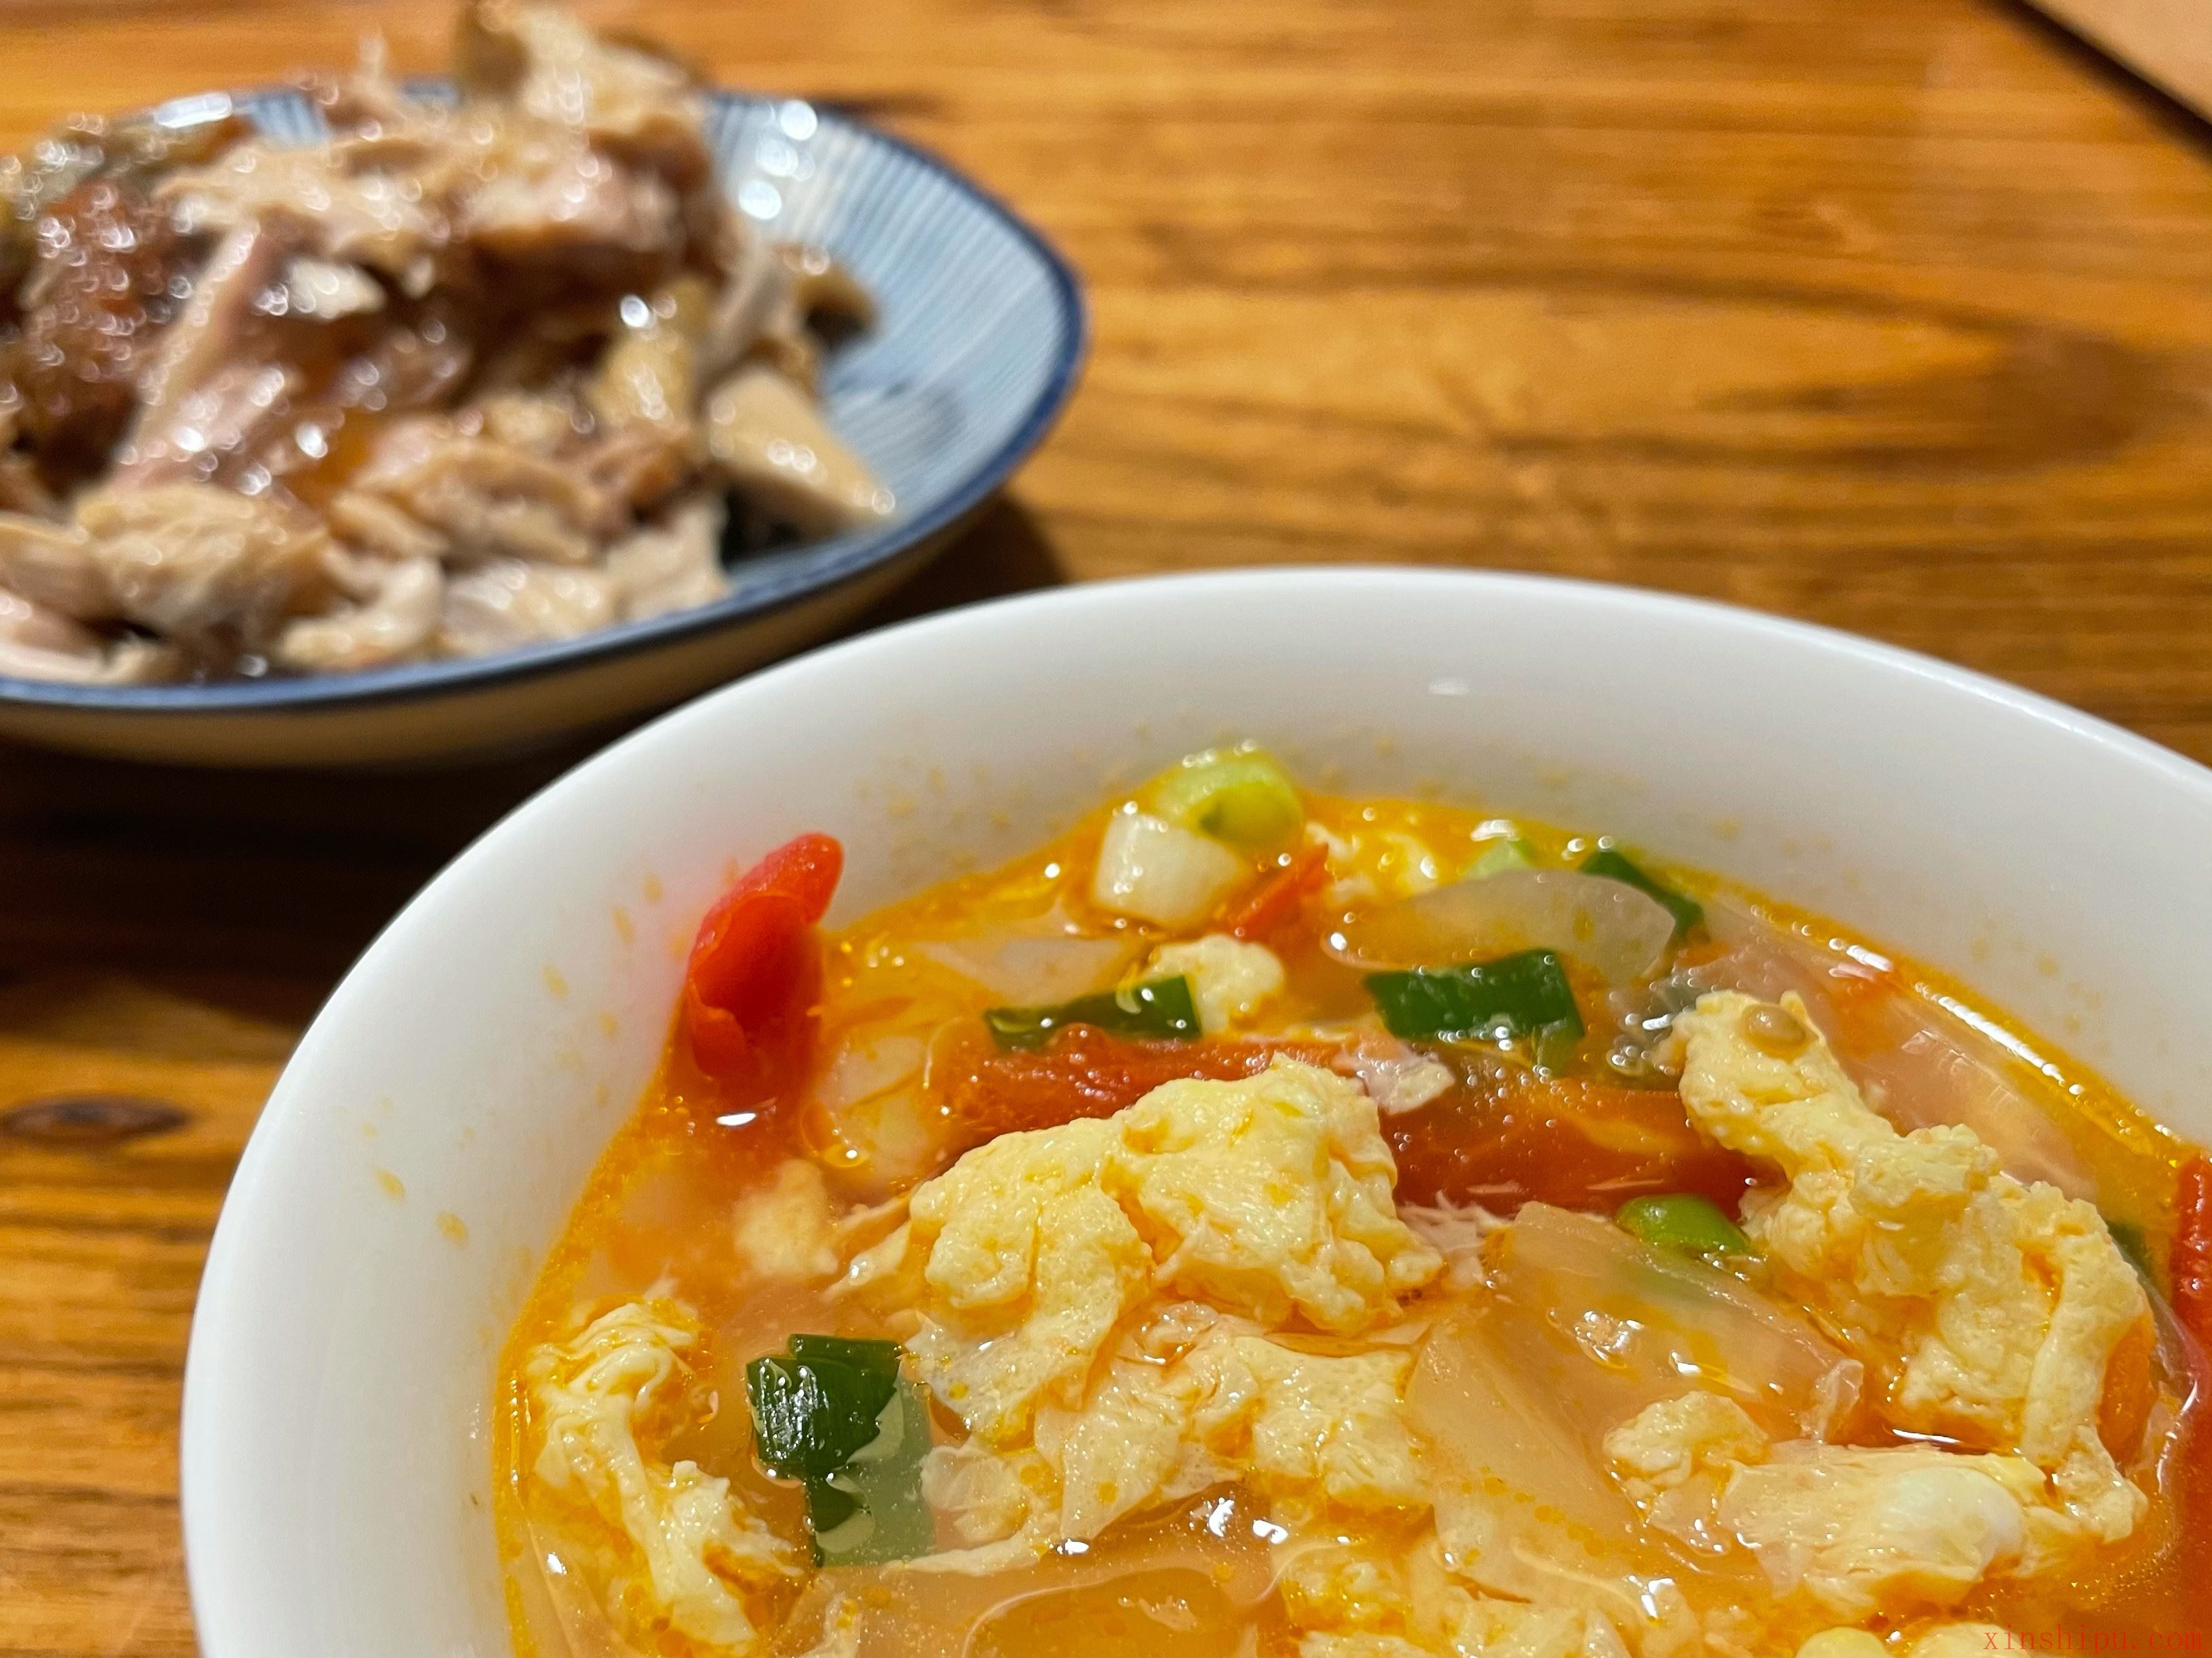 番茄煎蛋汤 - 四川凉水井餐饮管理有限公司